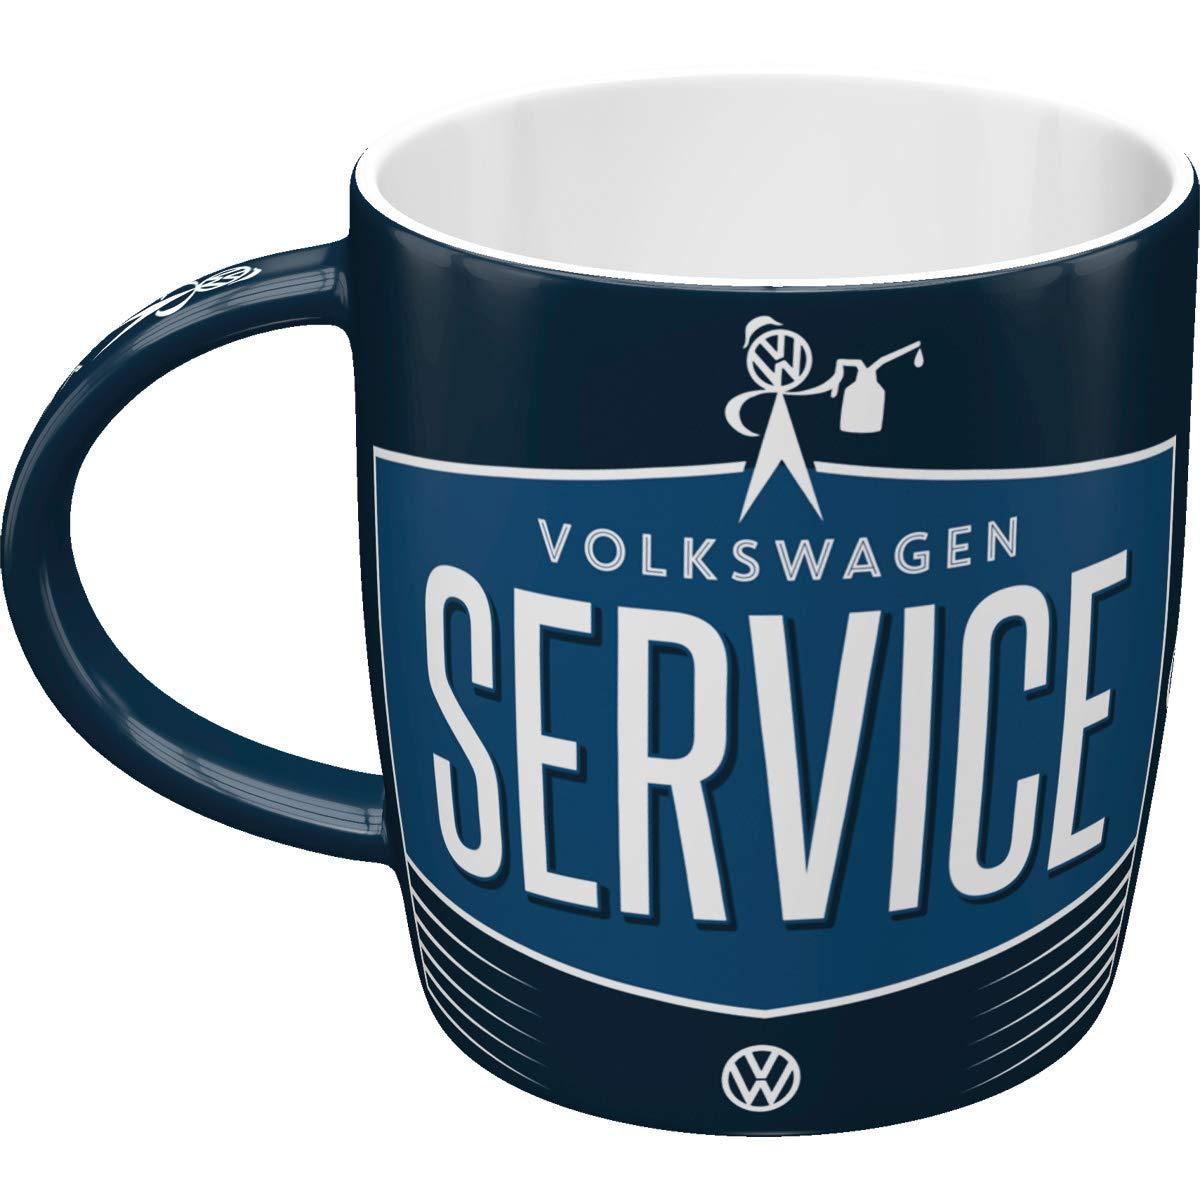 Volkswagen VW Service & Repairs Ceramic Mug